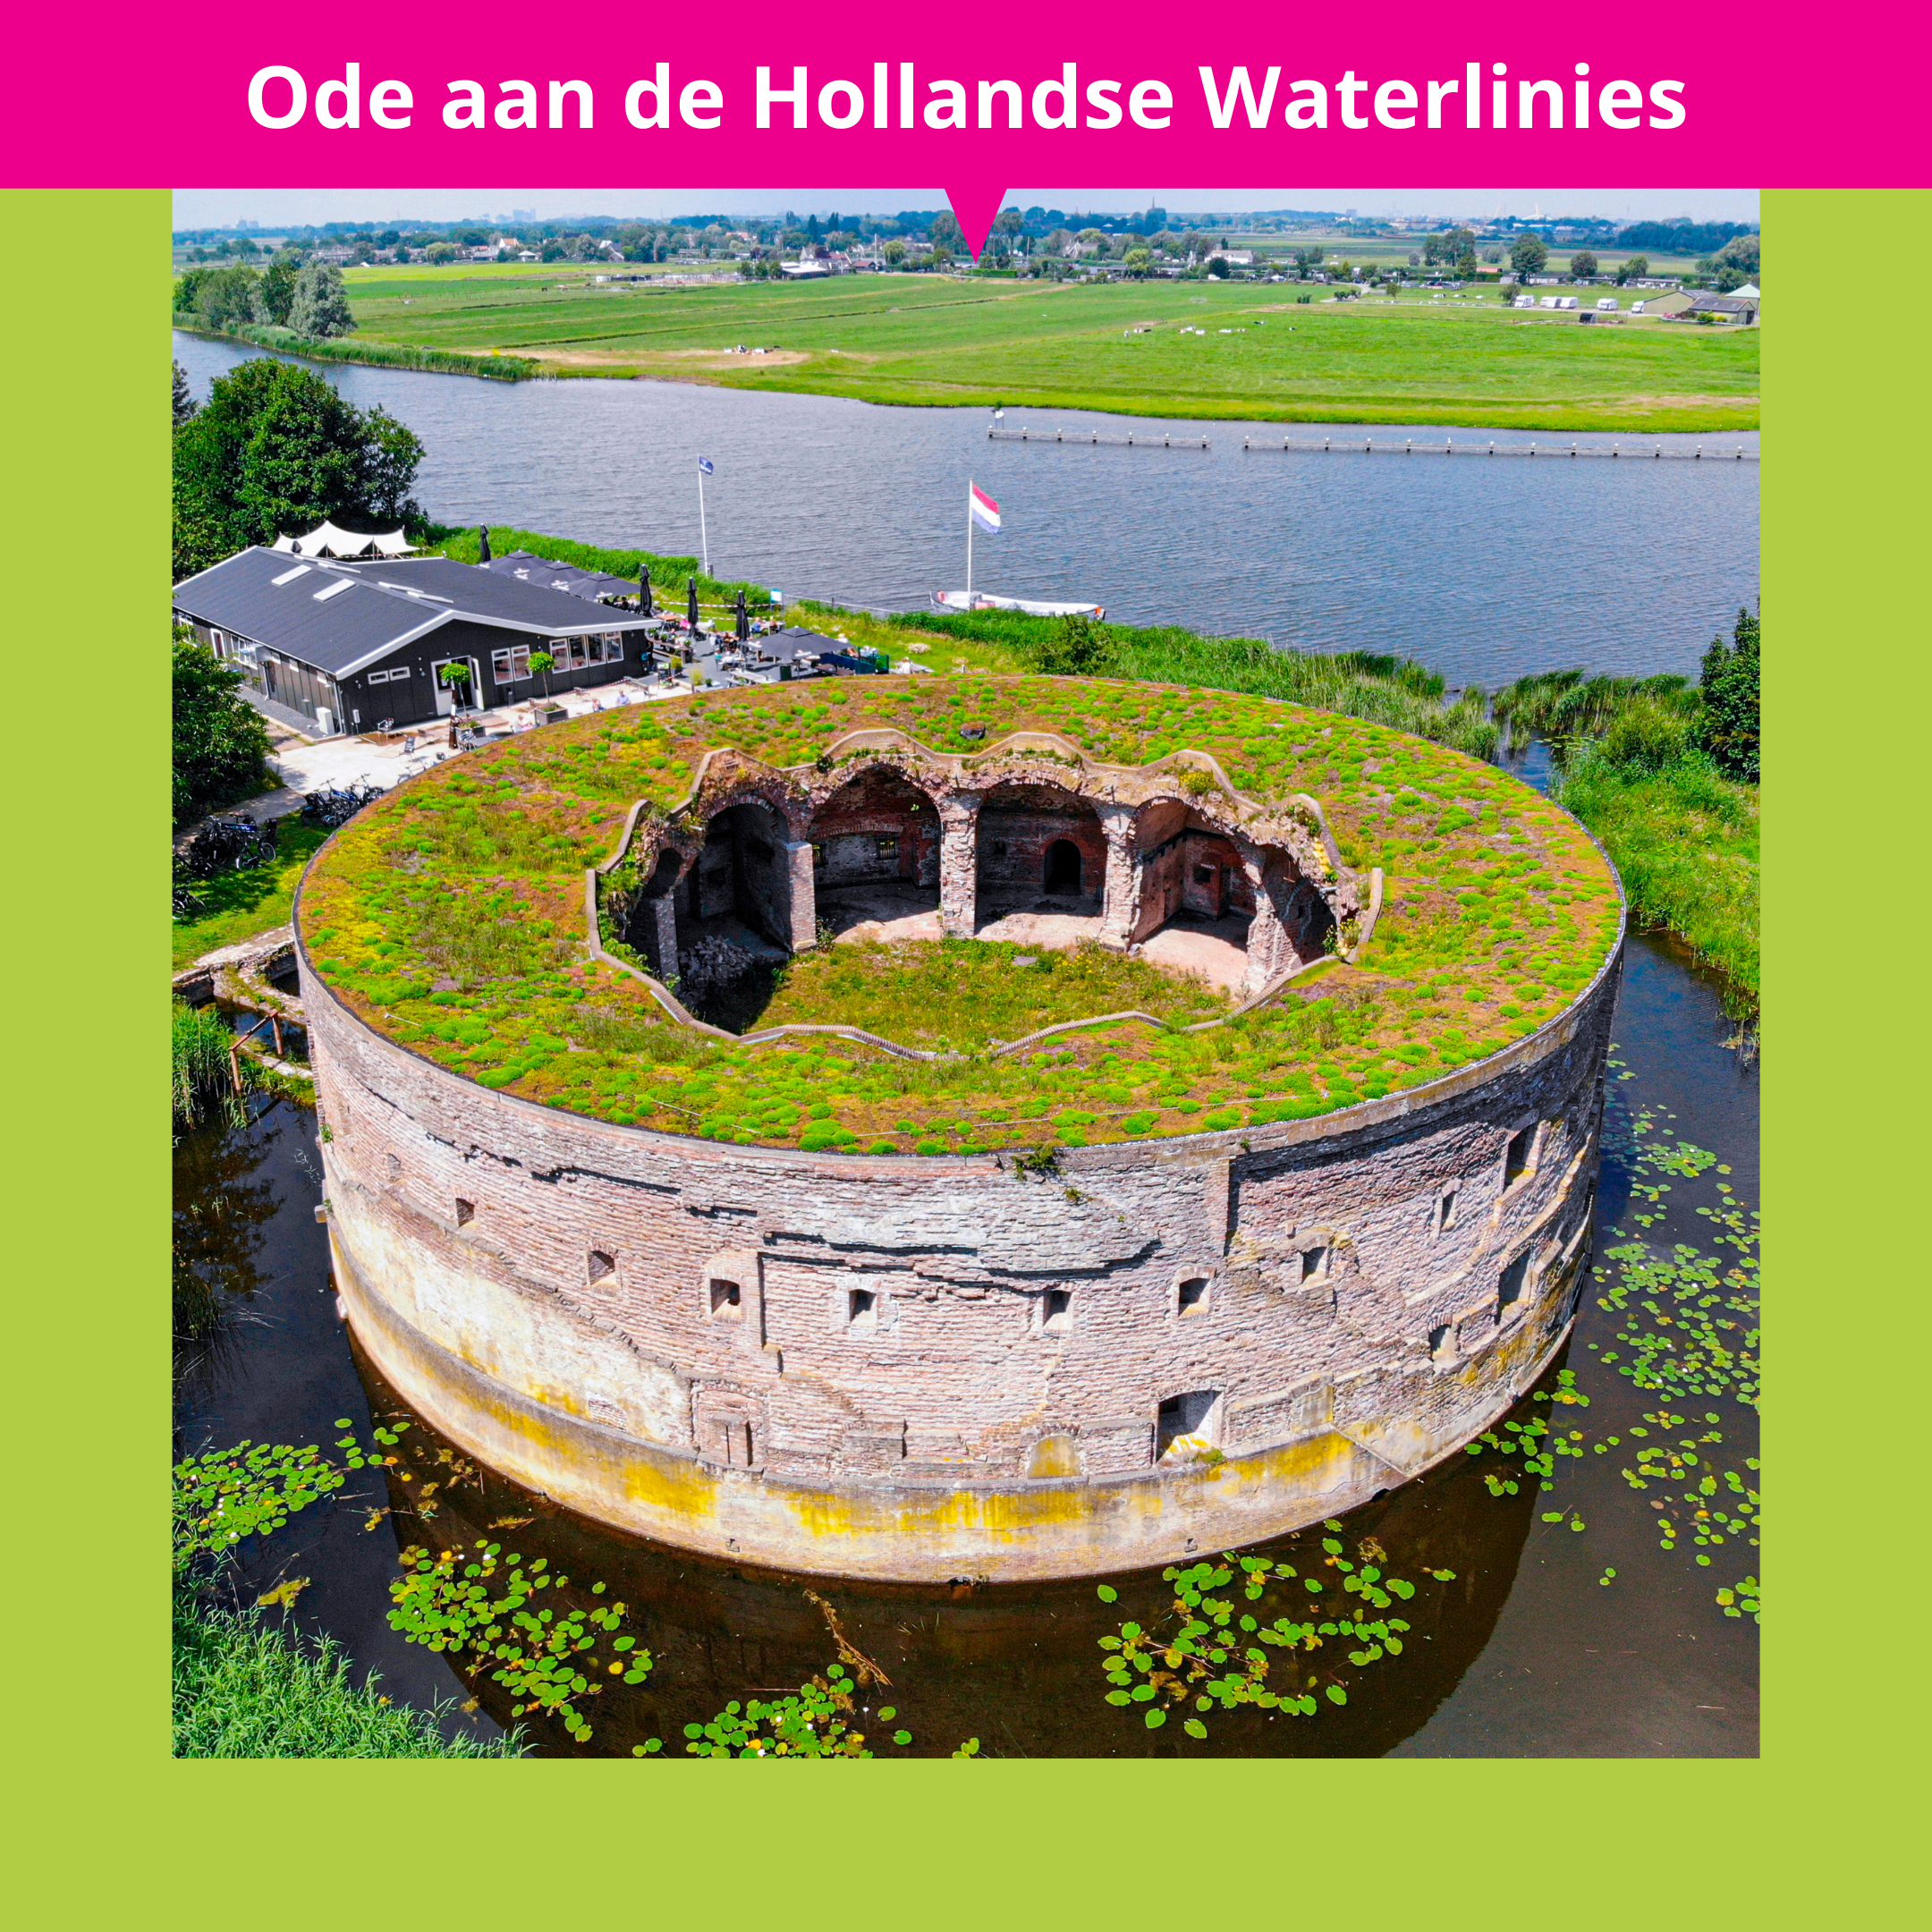 De_Vrijetijdkrant_Ode_aan_de_Hollandse_Waterlinies_INSTA